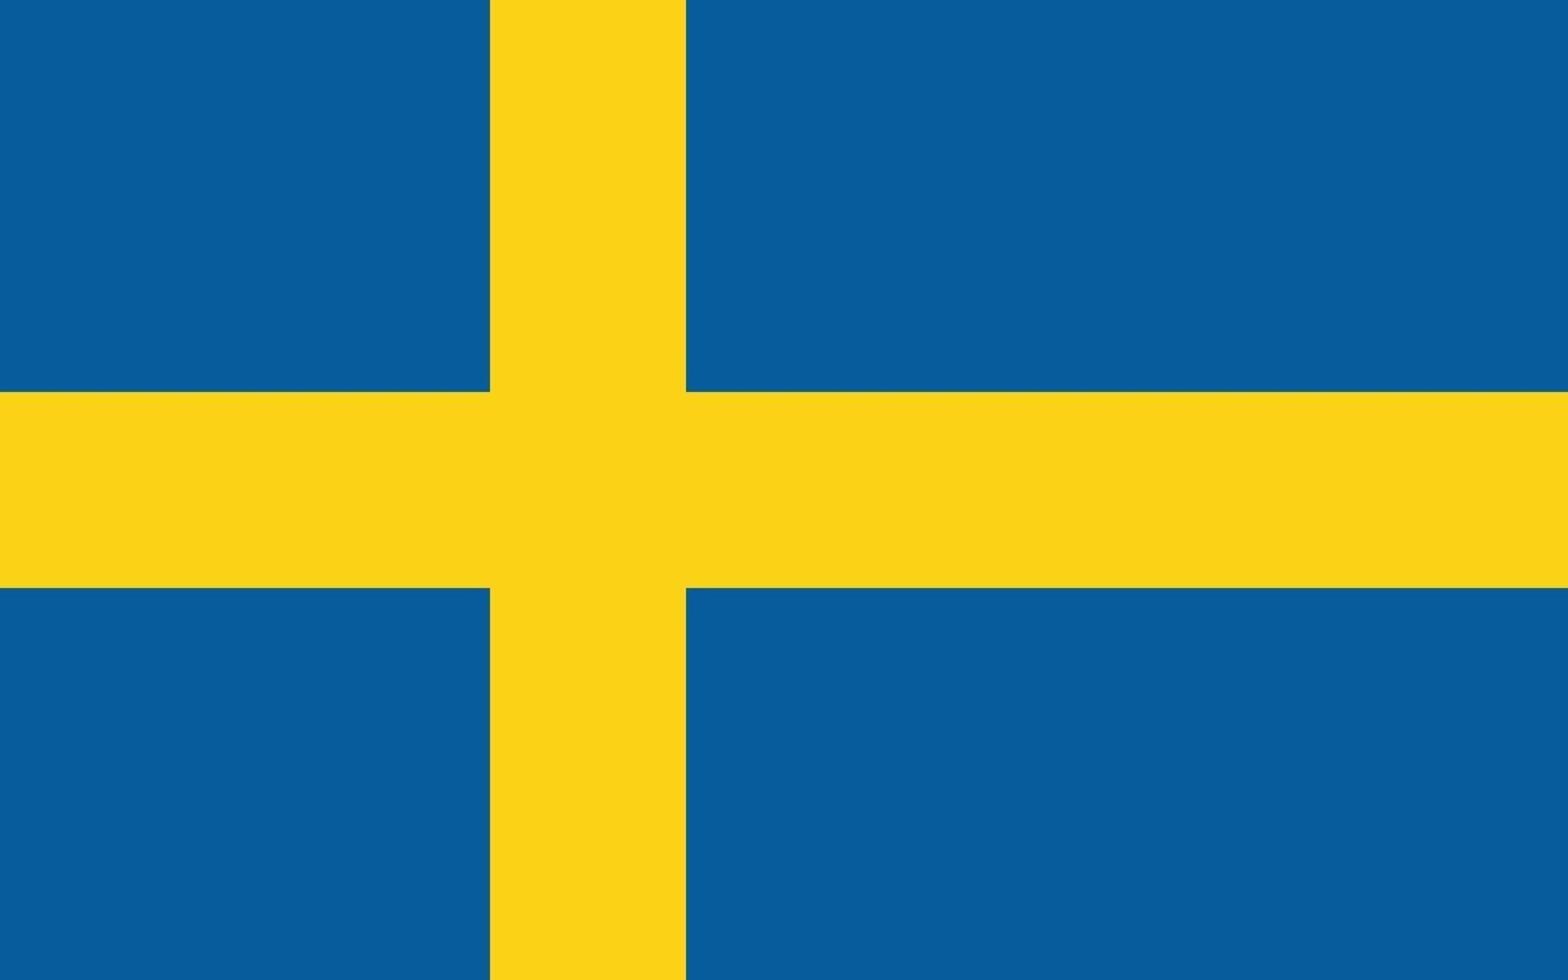 Sweden officially flag vector